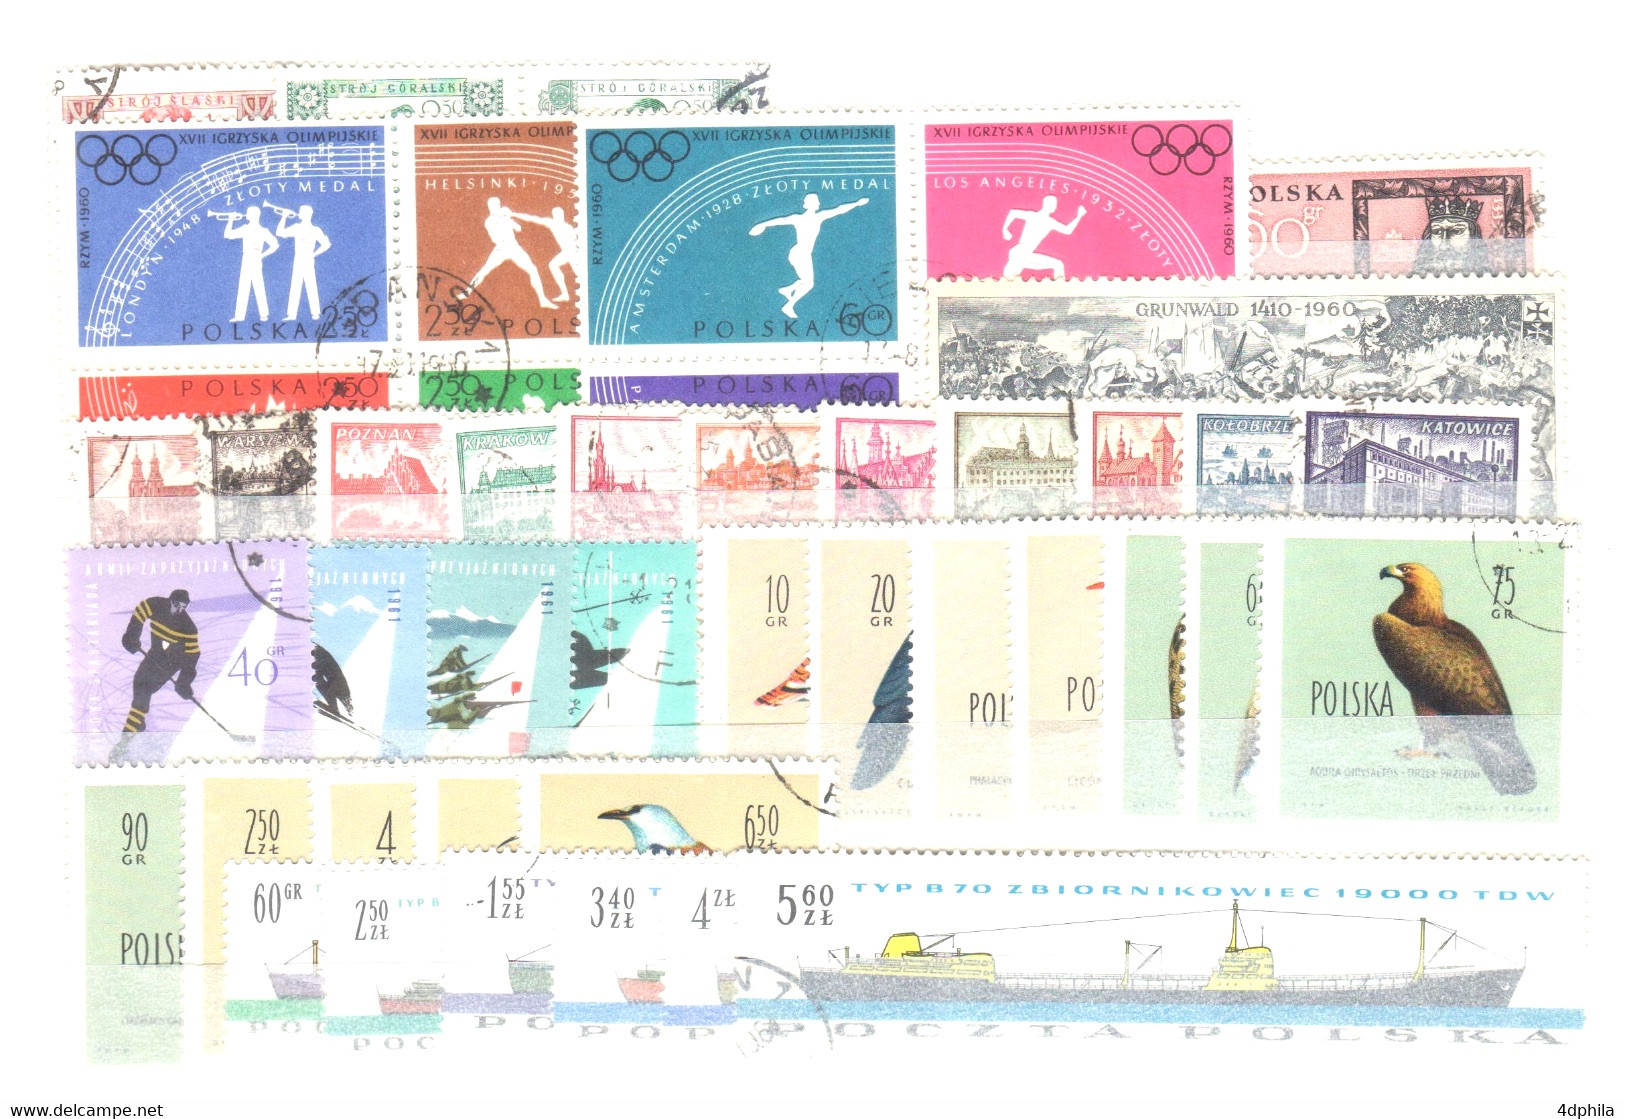 Pologne - Collection avec Zarki et OK/OP - 478 timbres